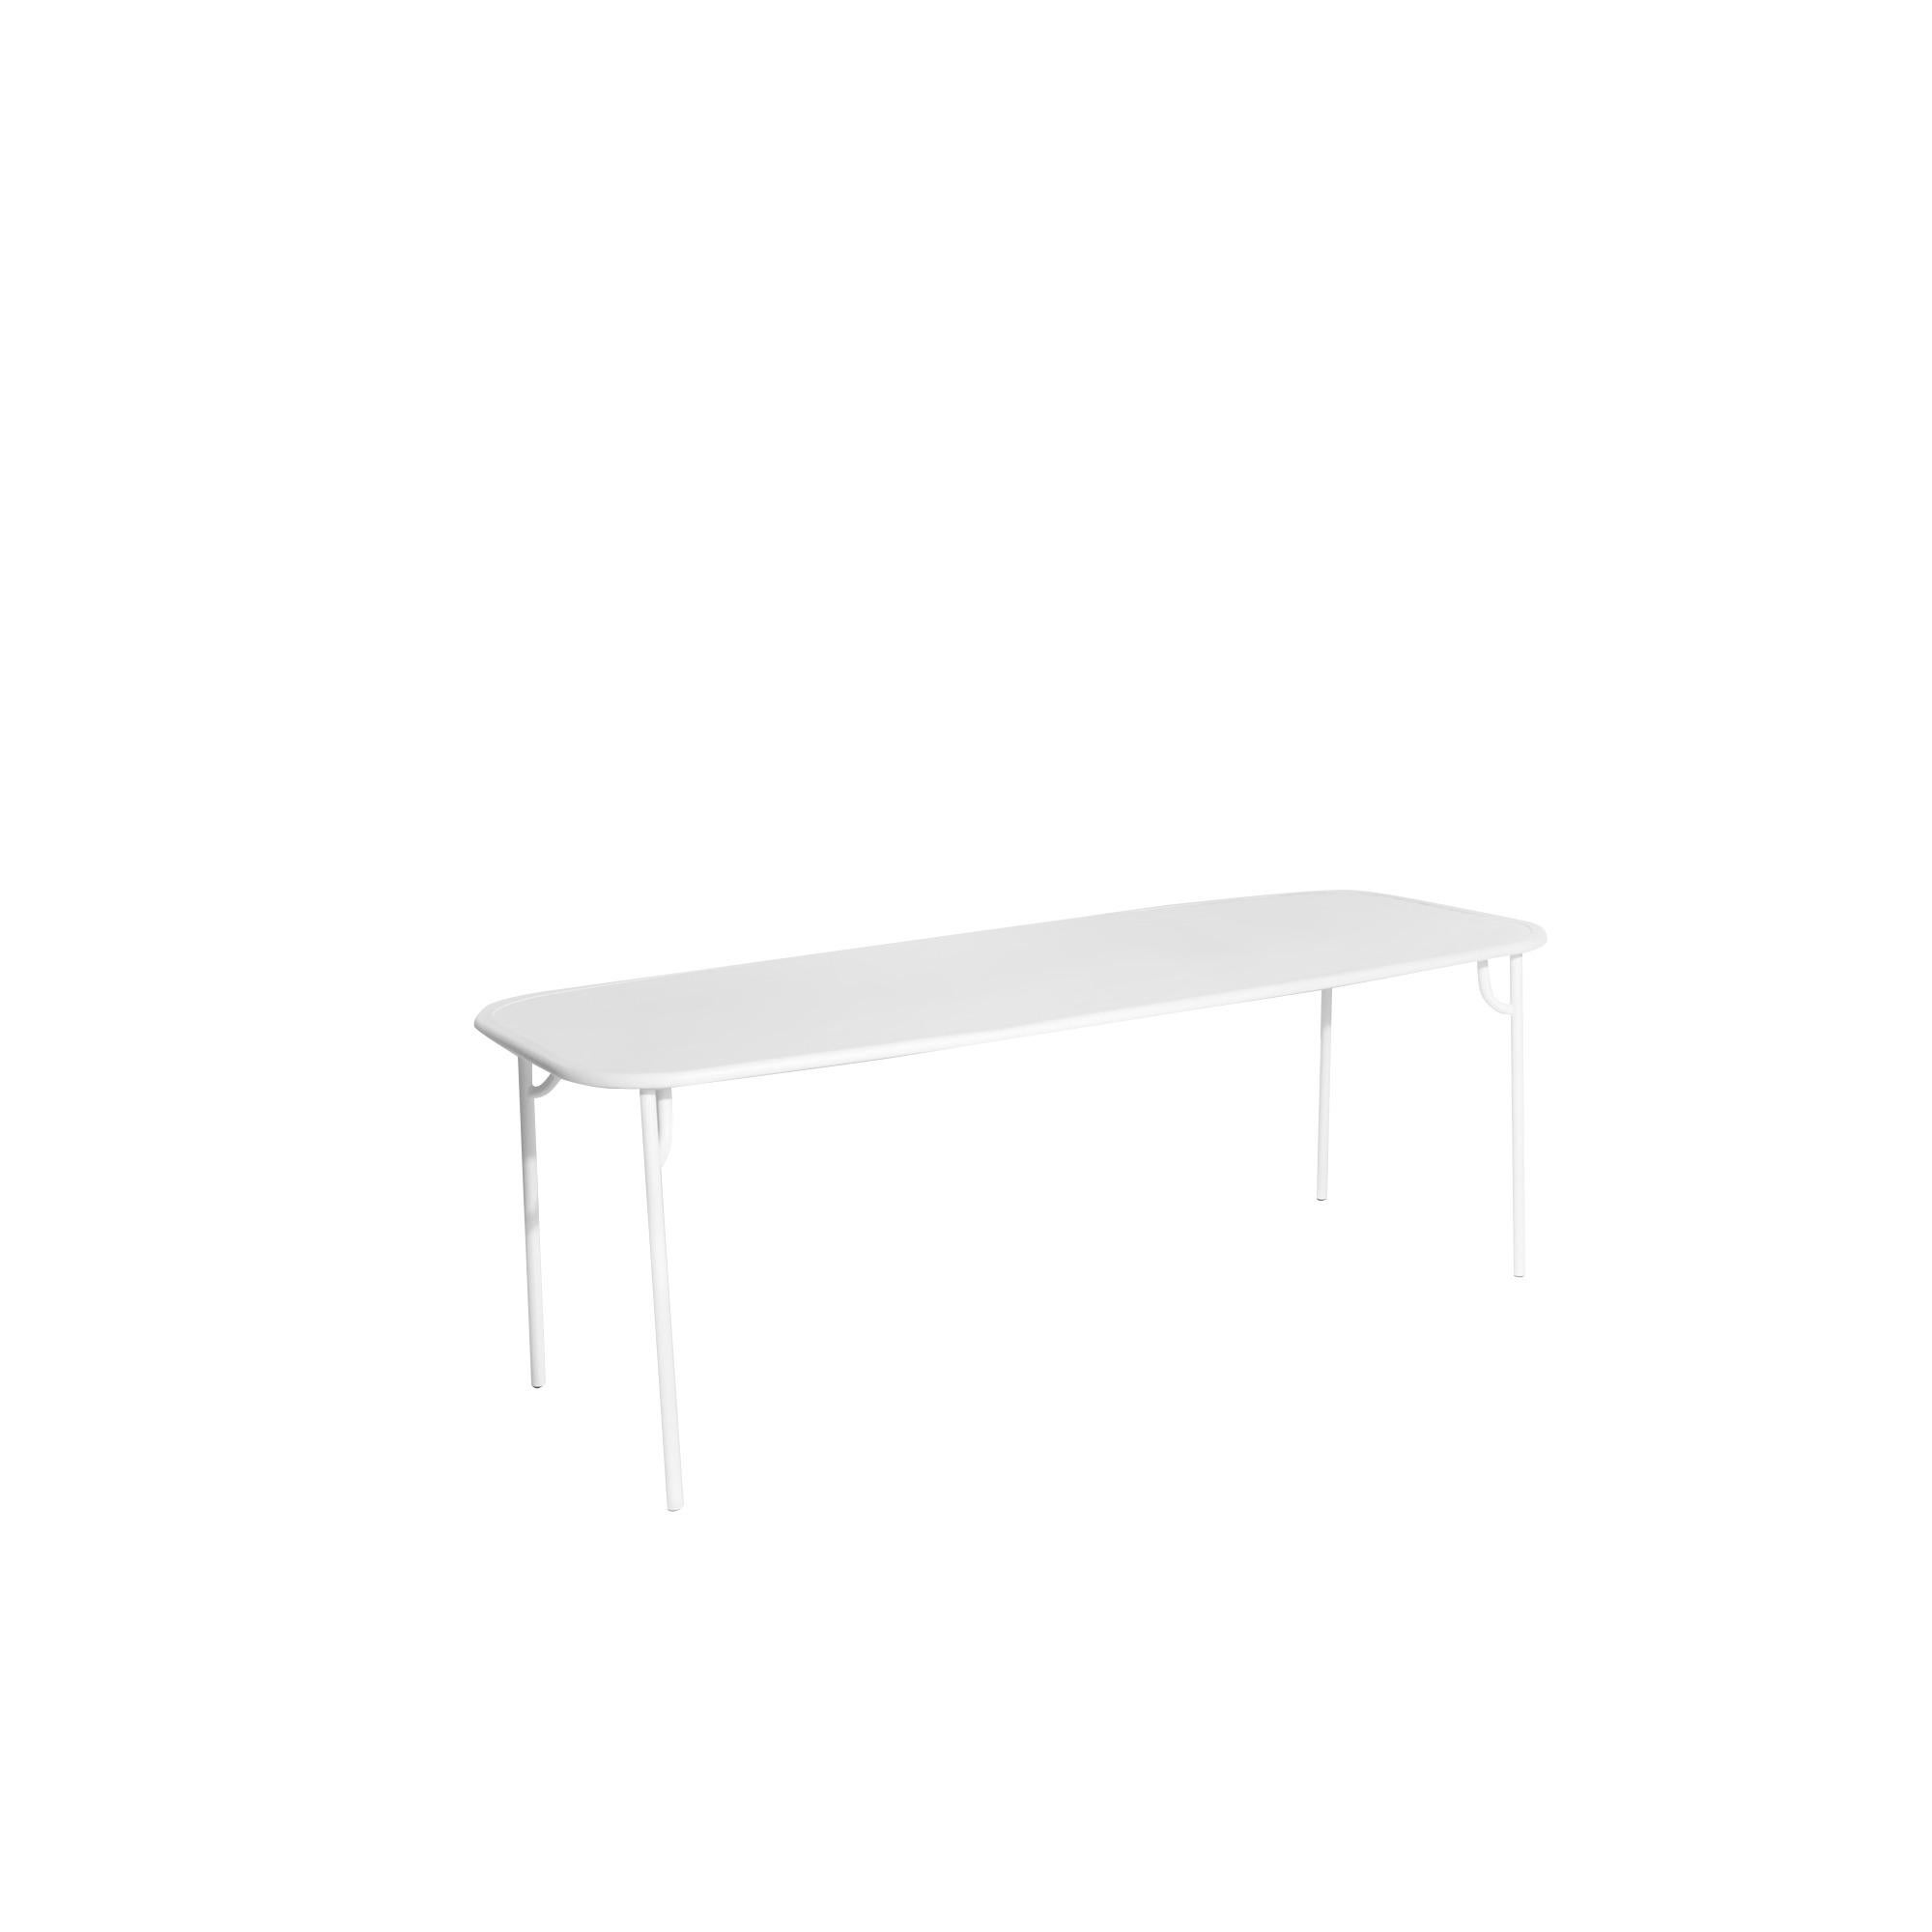 Petite Friture Week-End Large Plain Rectangular Dining Table in White Aluminium by Studio BrichetZiegler, 2017

Die Week-End-Kollektion besteht aus einer kompletten Palette von Außenmöbeln mit mattierter Epoxidharzlackierung mit Aluminiummaserung,